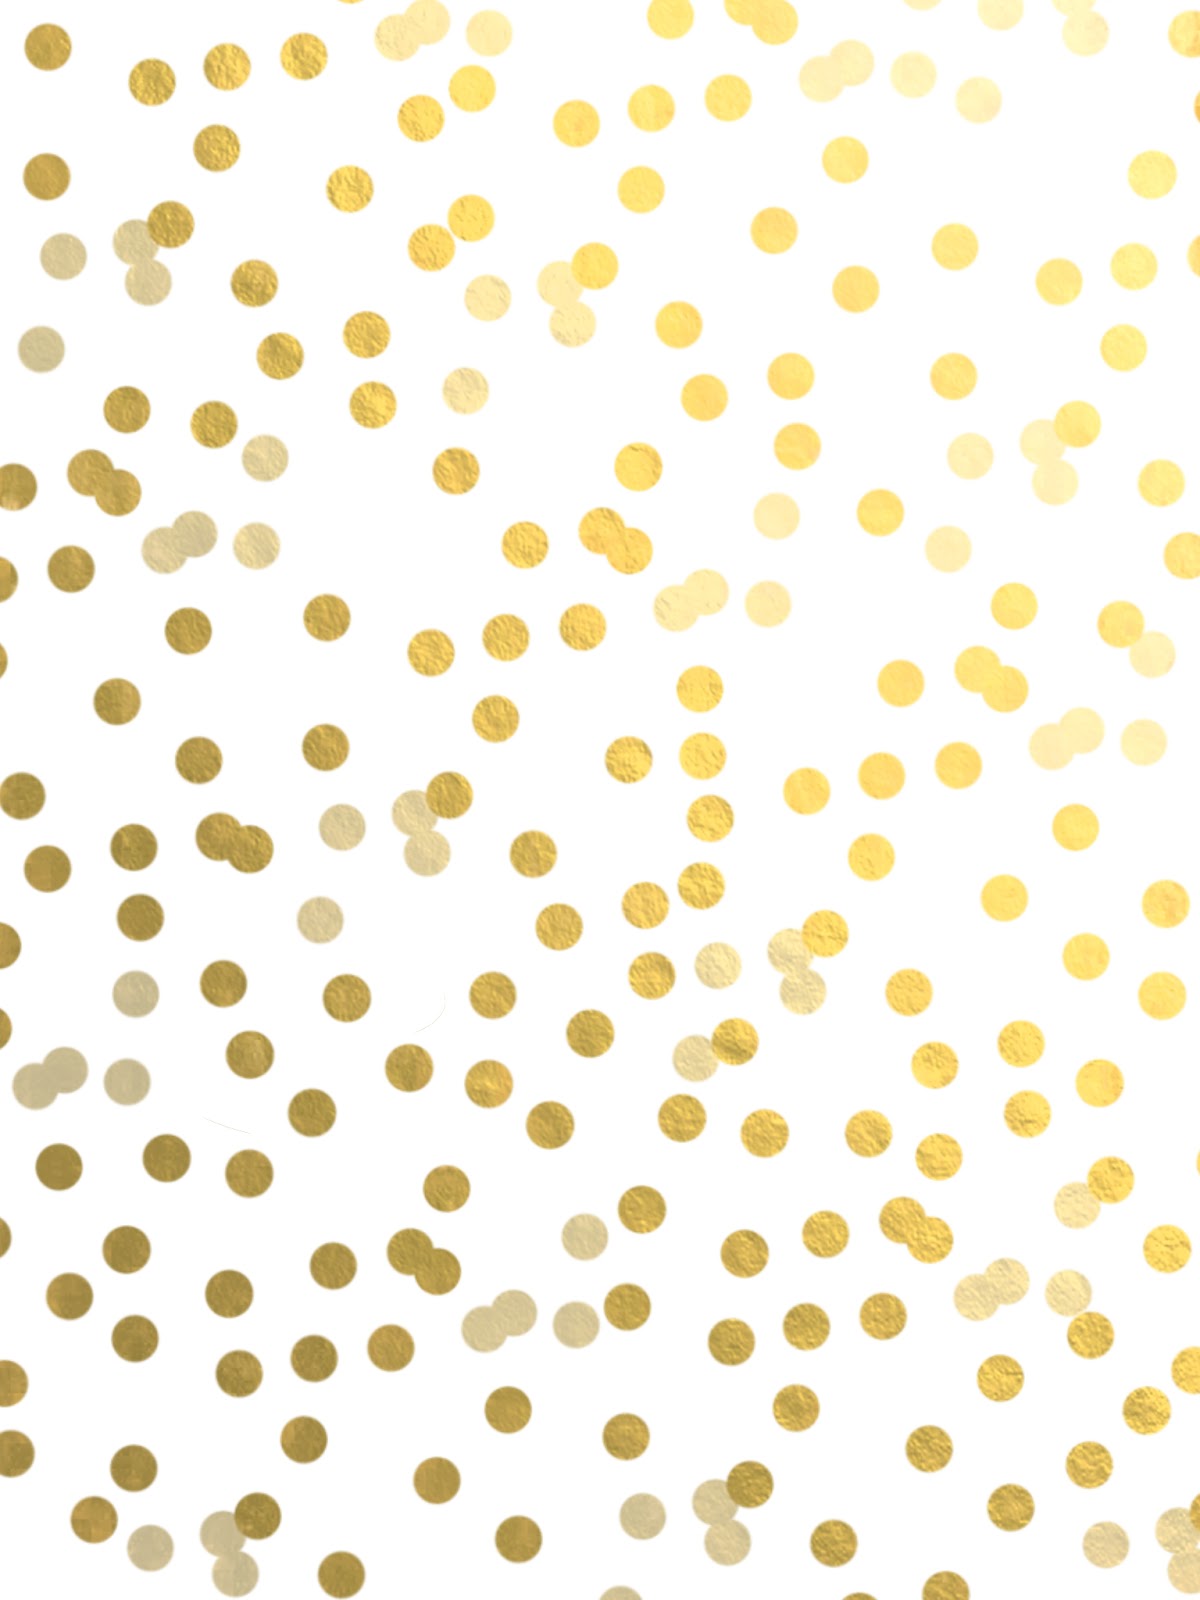 iPad Gold Polka Dots